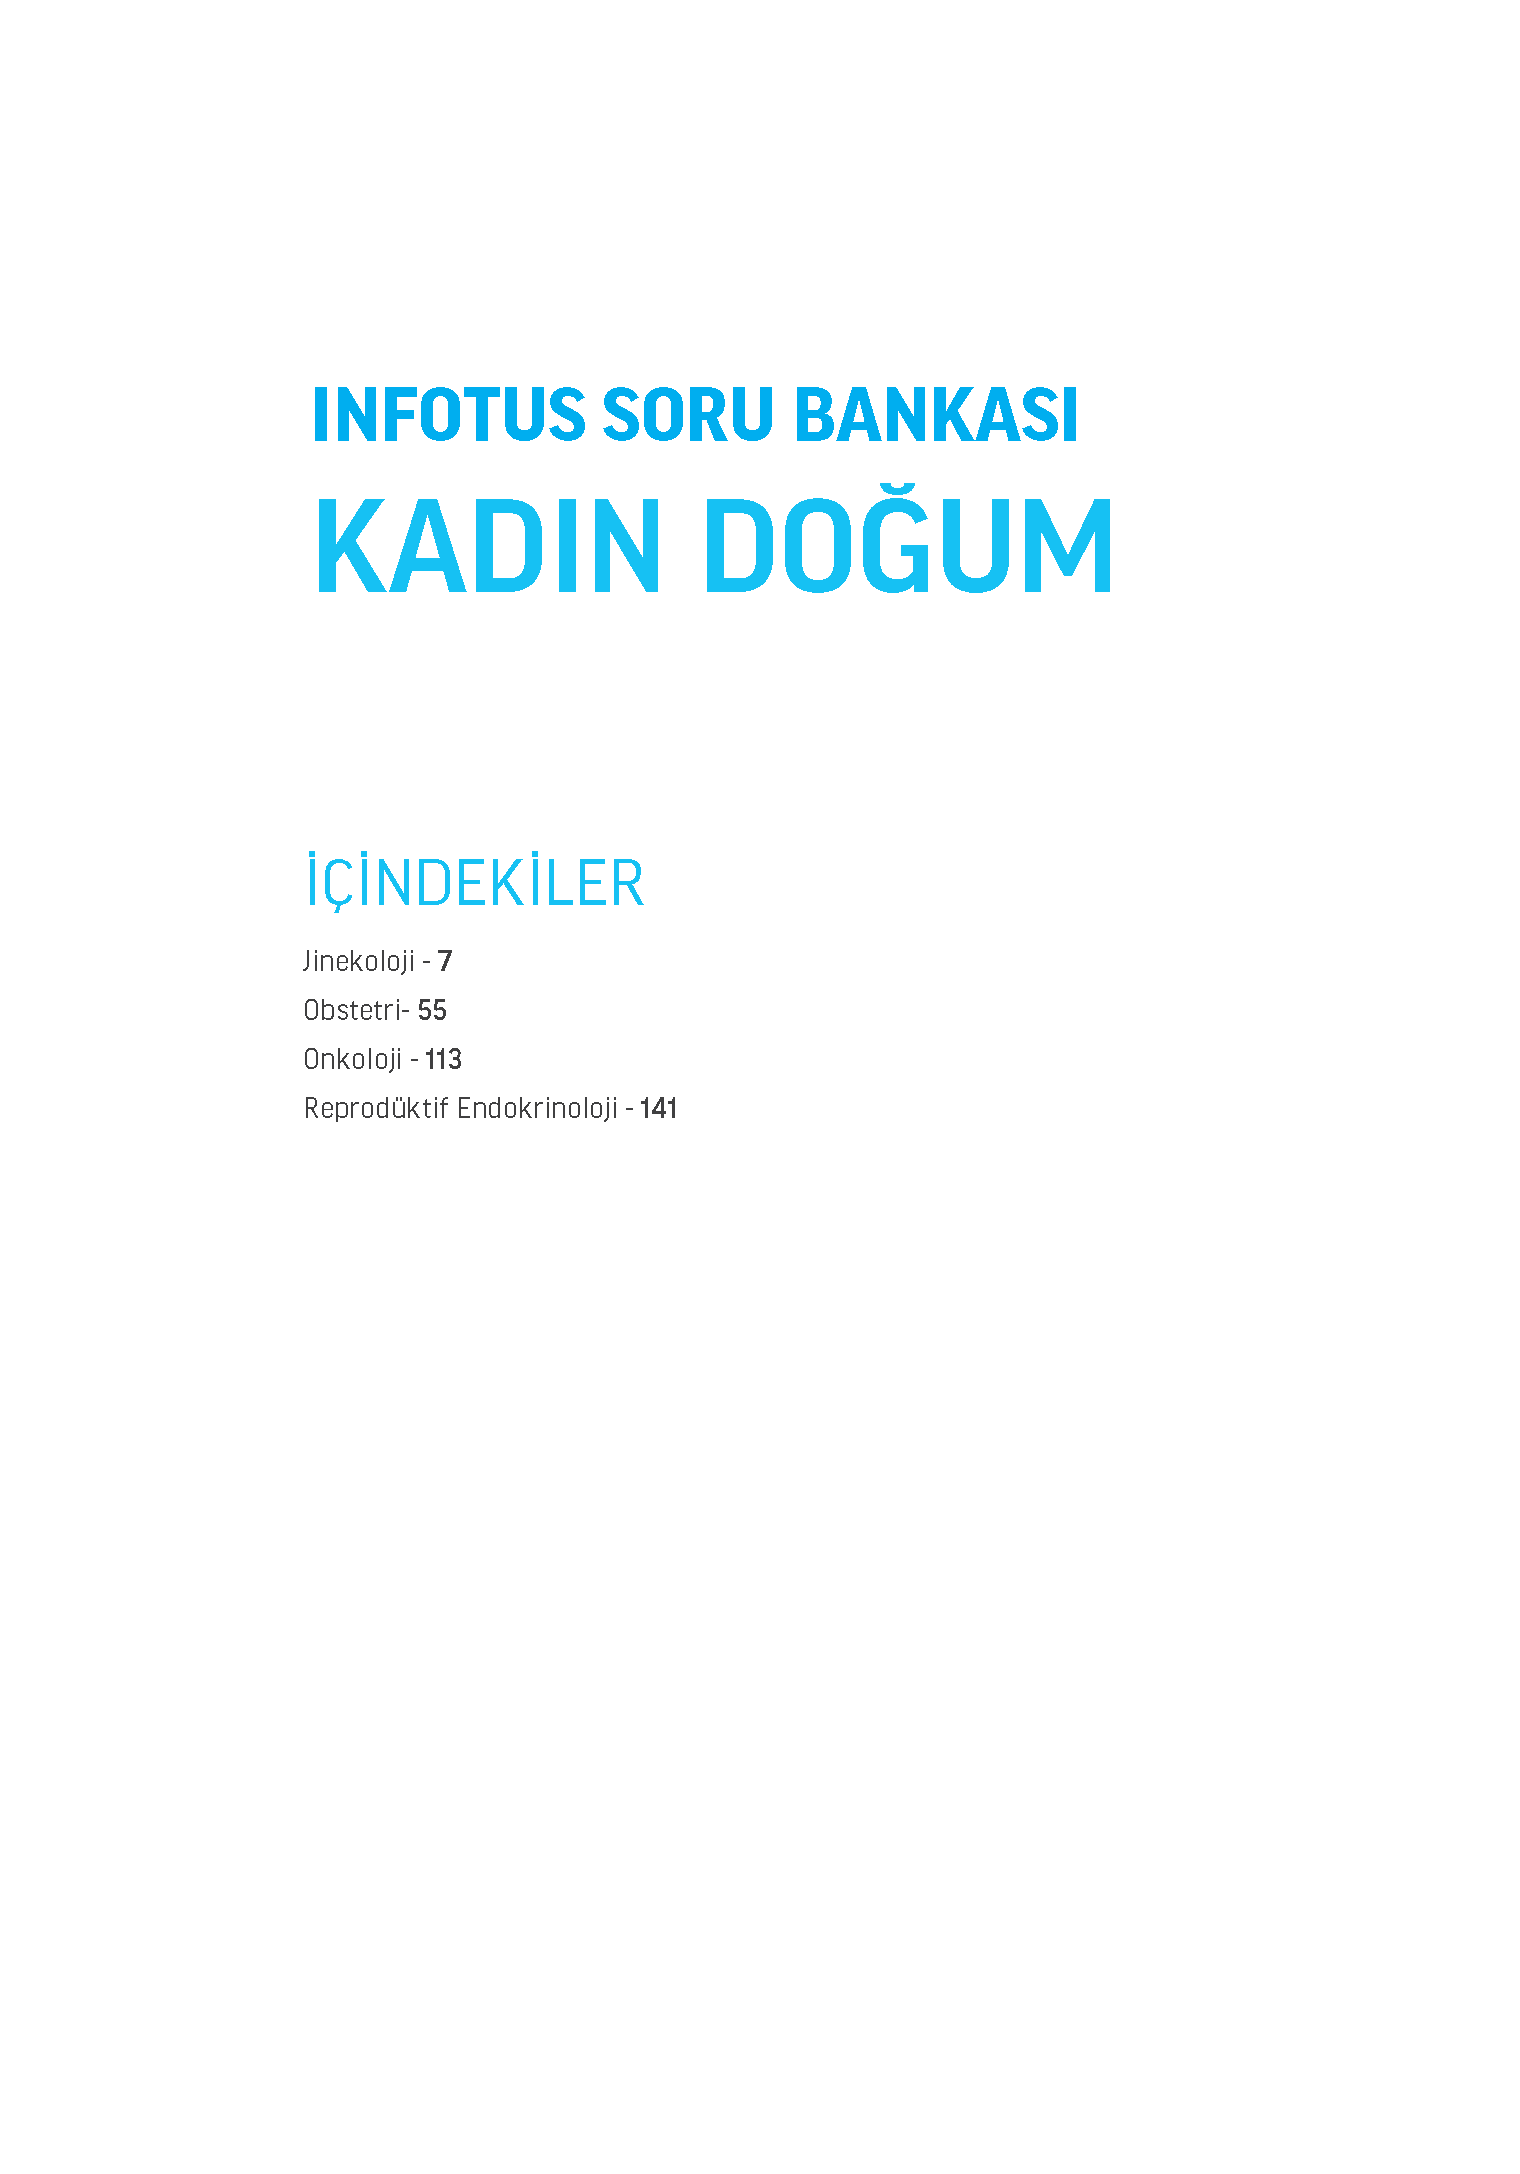 INFOTUS SORU BANKASI KDOGUM_Page_003